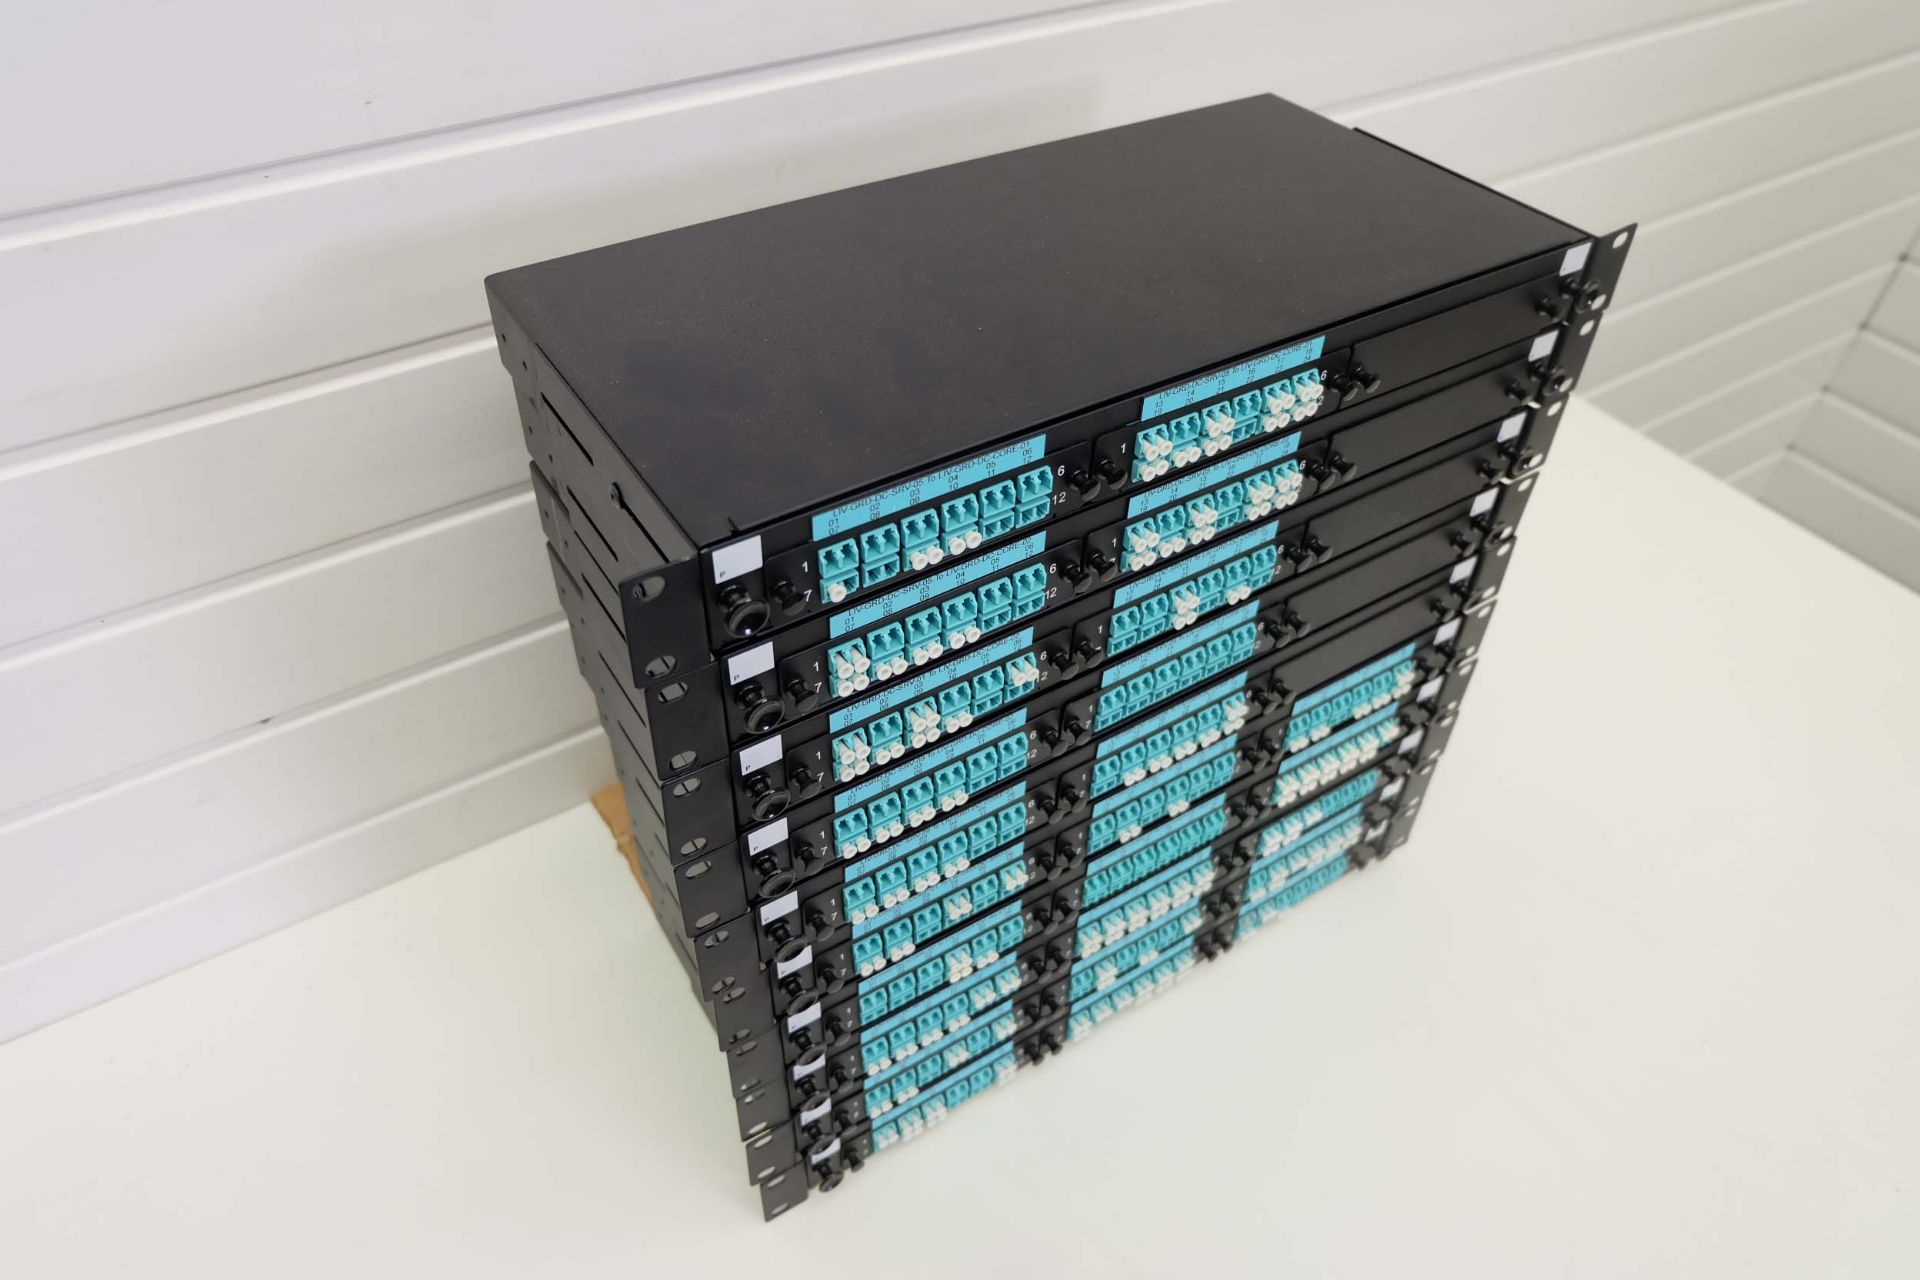 10 x Fibre Optic Cassette Patch Panels. Rack Mountable 1U 19". Port, Duplex LC MPO MTP Fibre Optics. - Image 2 of 4